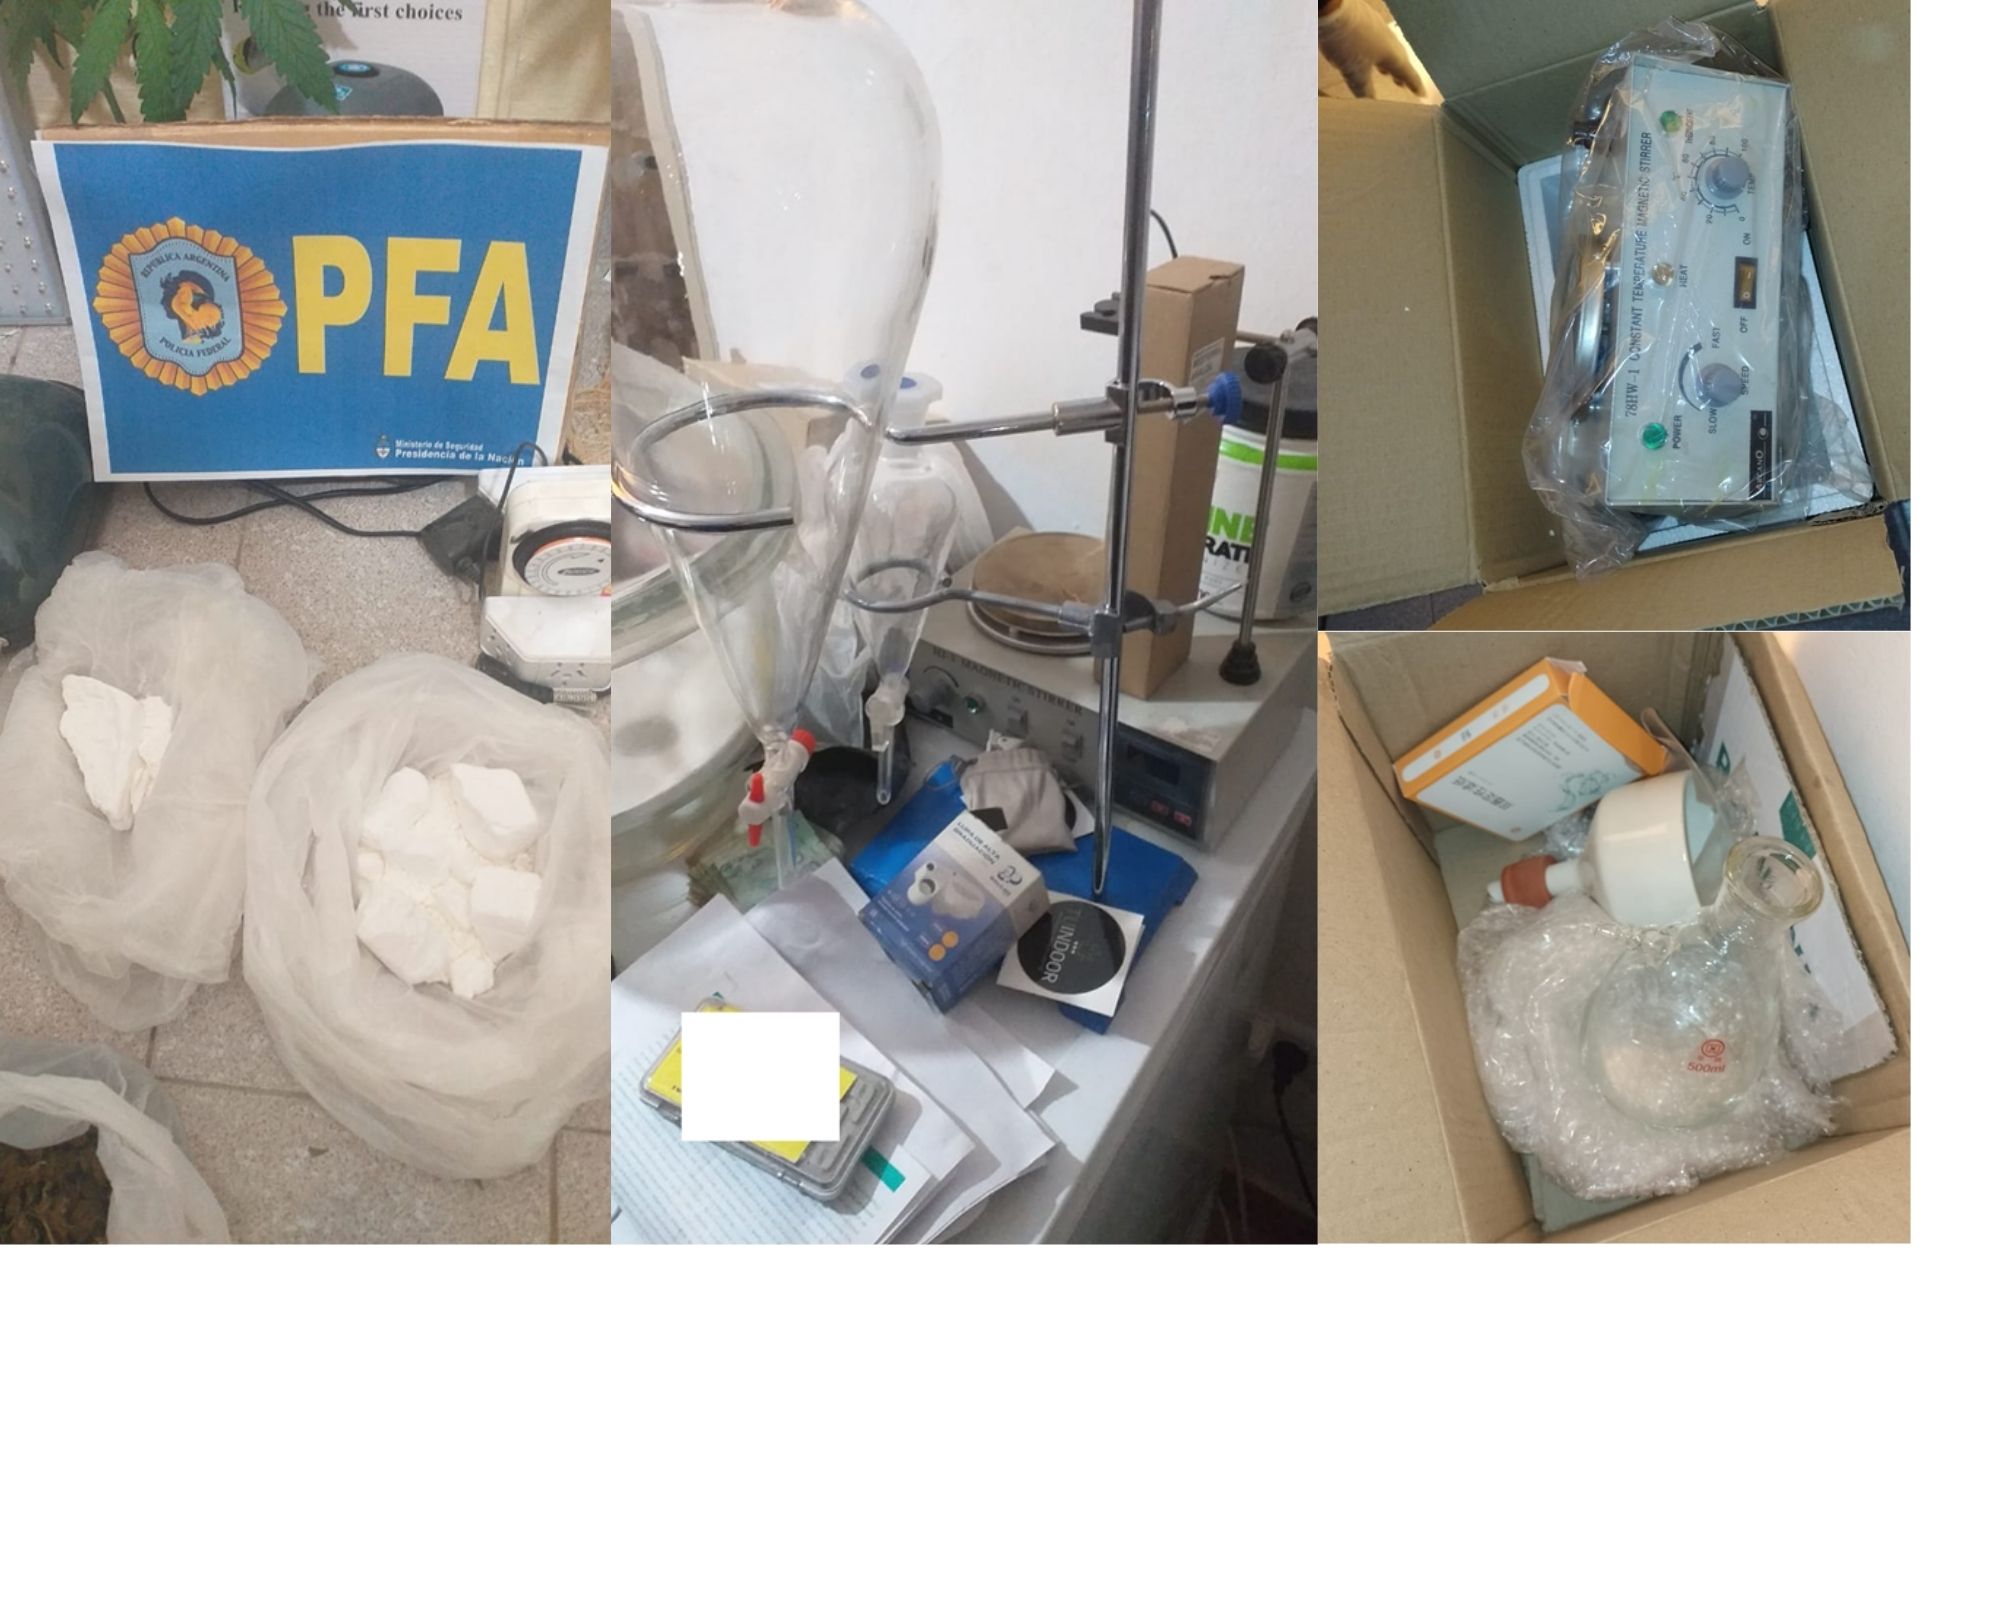 El material estupefaciente y los elementos secuestrados durante el procedimiento.  - Fotos: Policía Federal Argentina